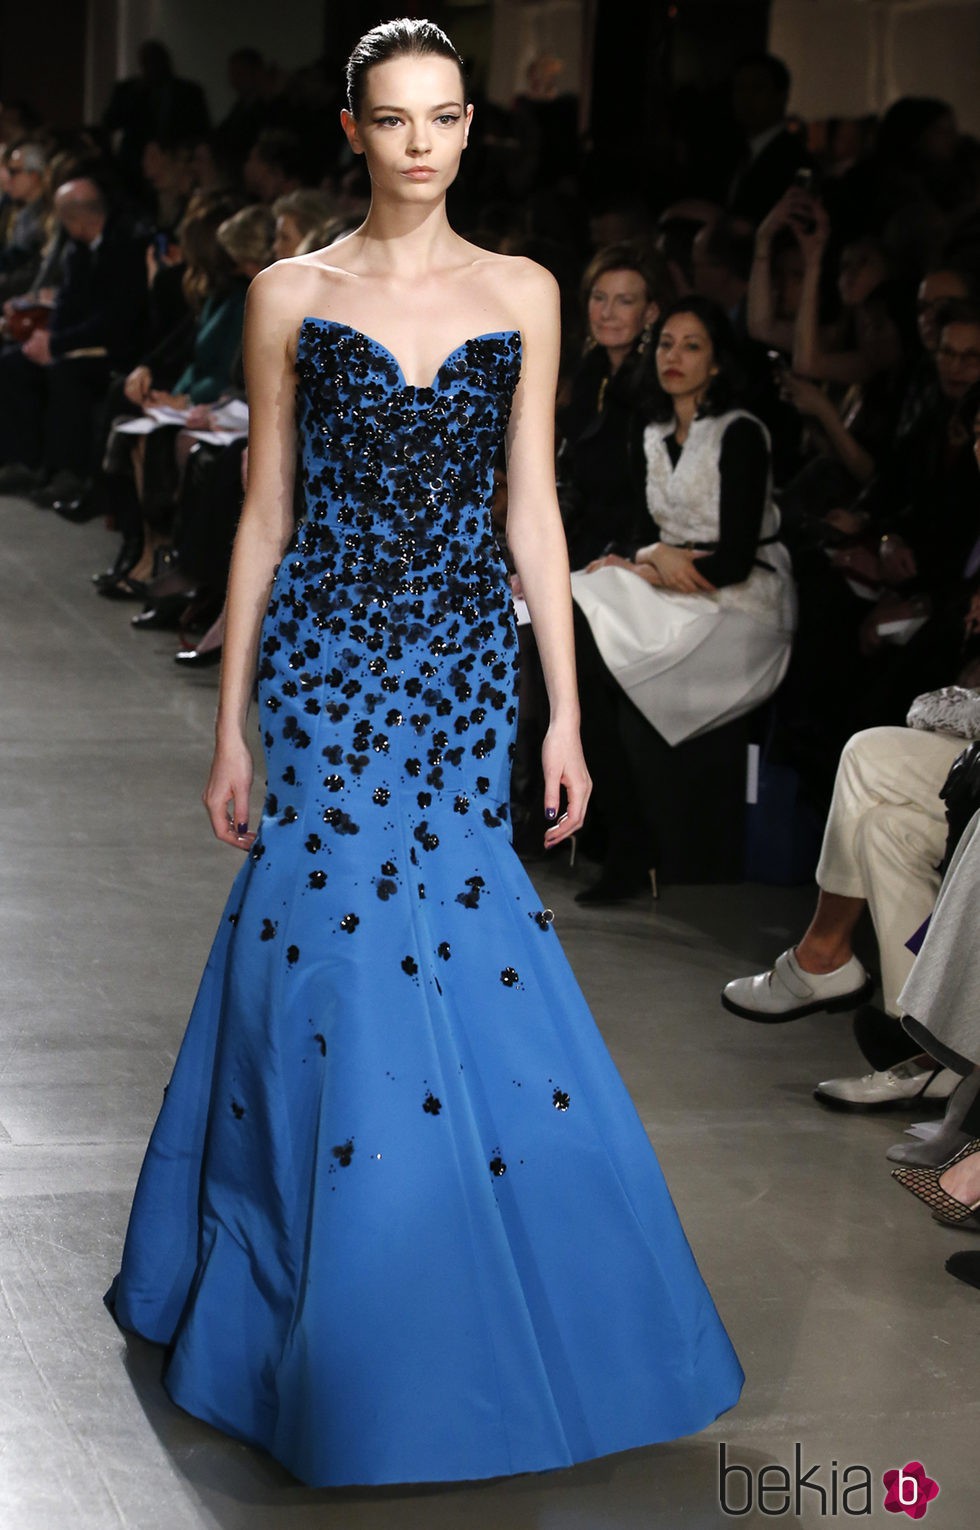 Vestido azul largo de la colección otoño/invierno 2015/2015 de Oscar de la Renta en Nueva York Fashion Week